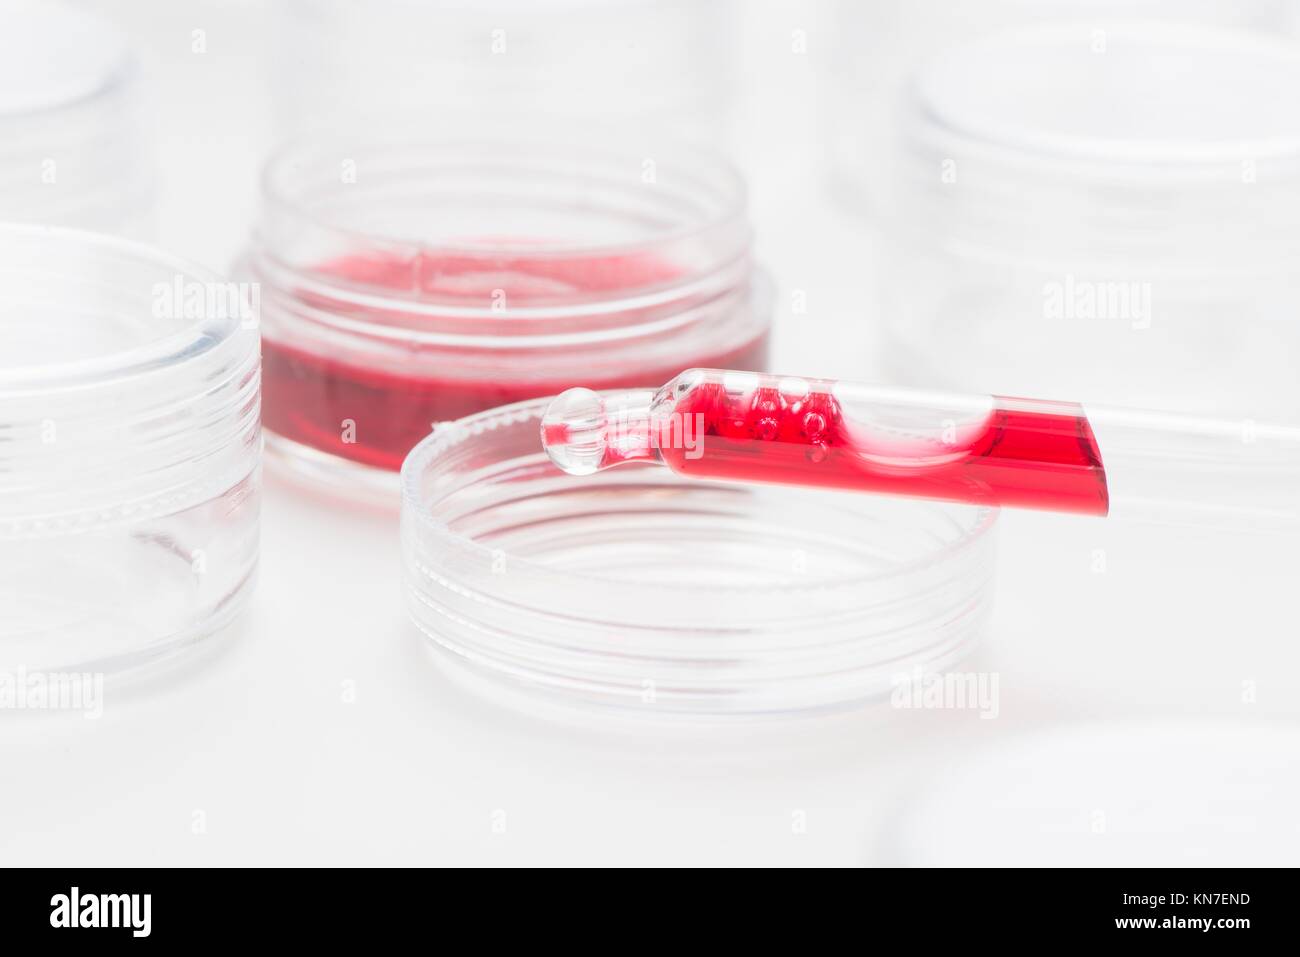 La ricerca di laboratorio con fluidi. Immagine concettuale della sperimentazione clinica, l'analisi scientifica e della scienza della salute. Foto Stock